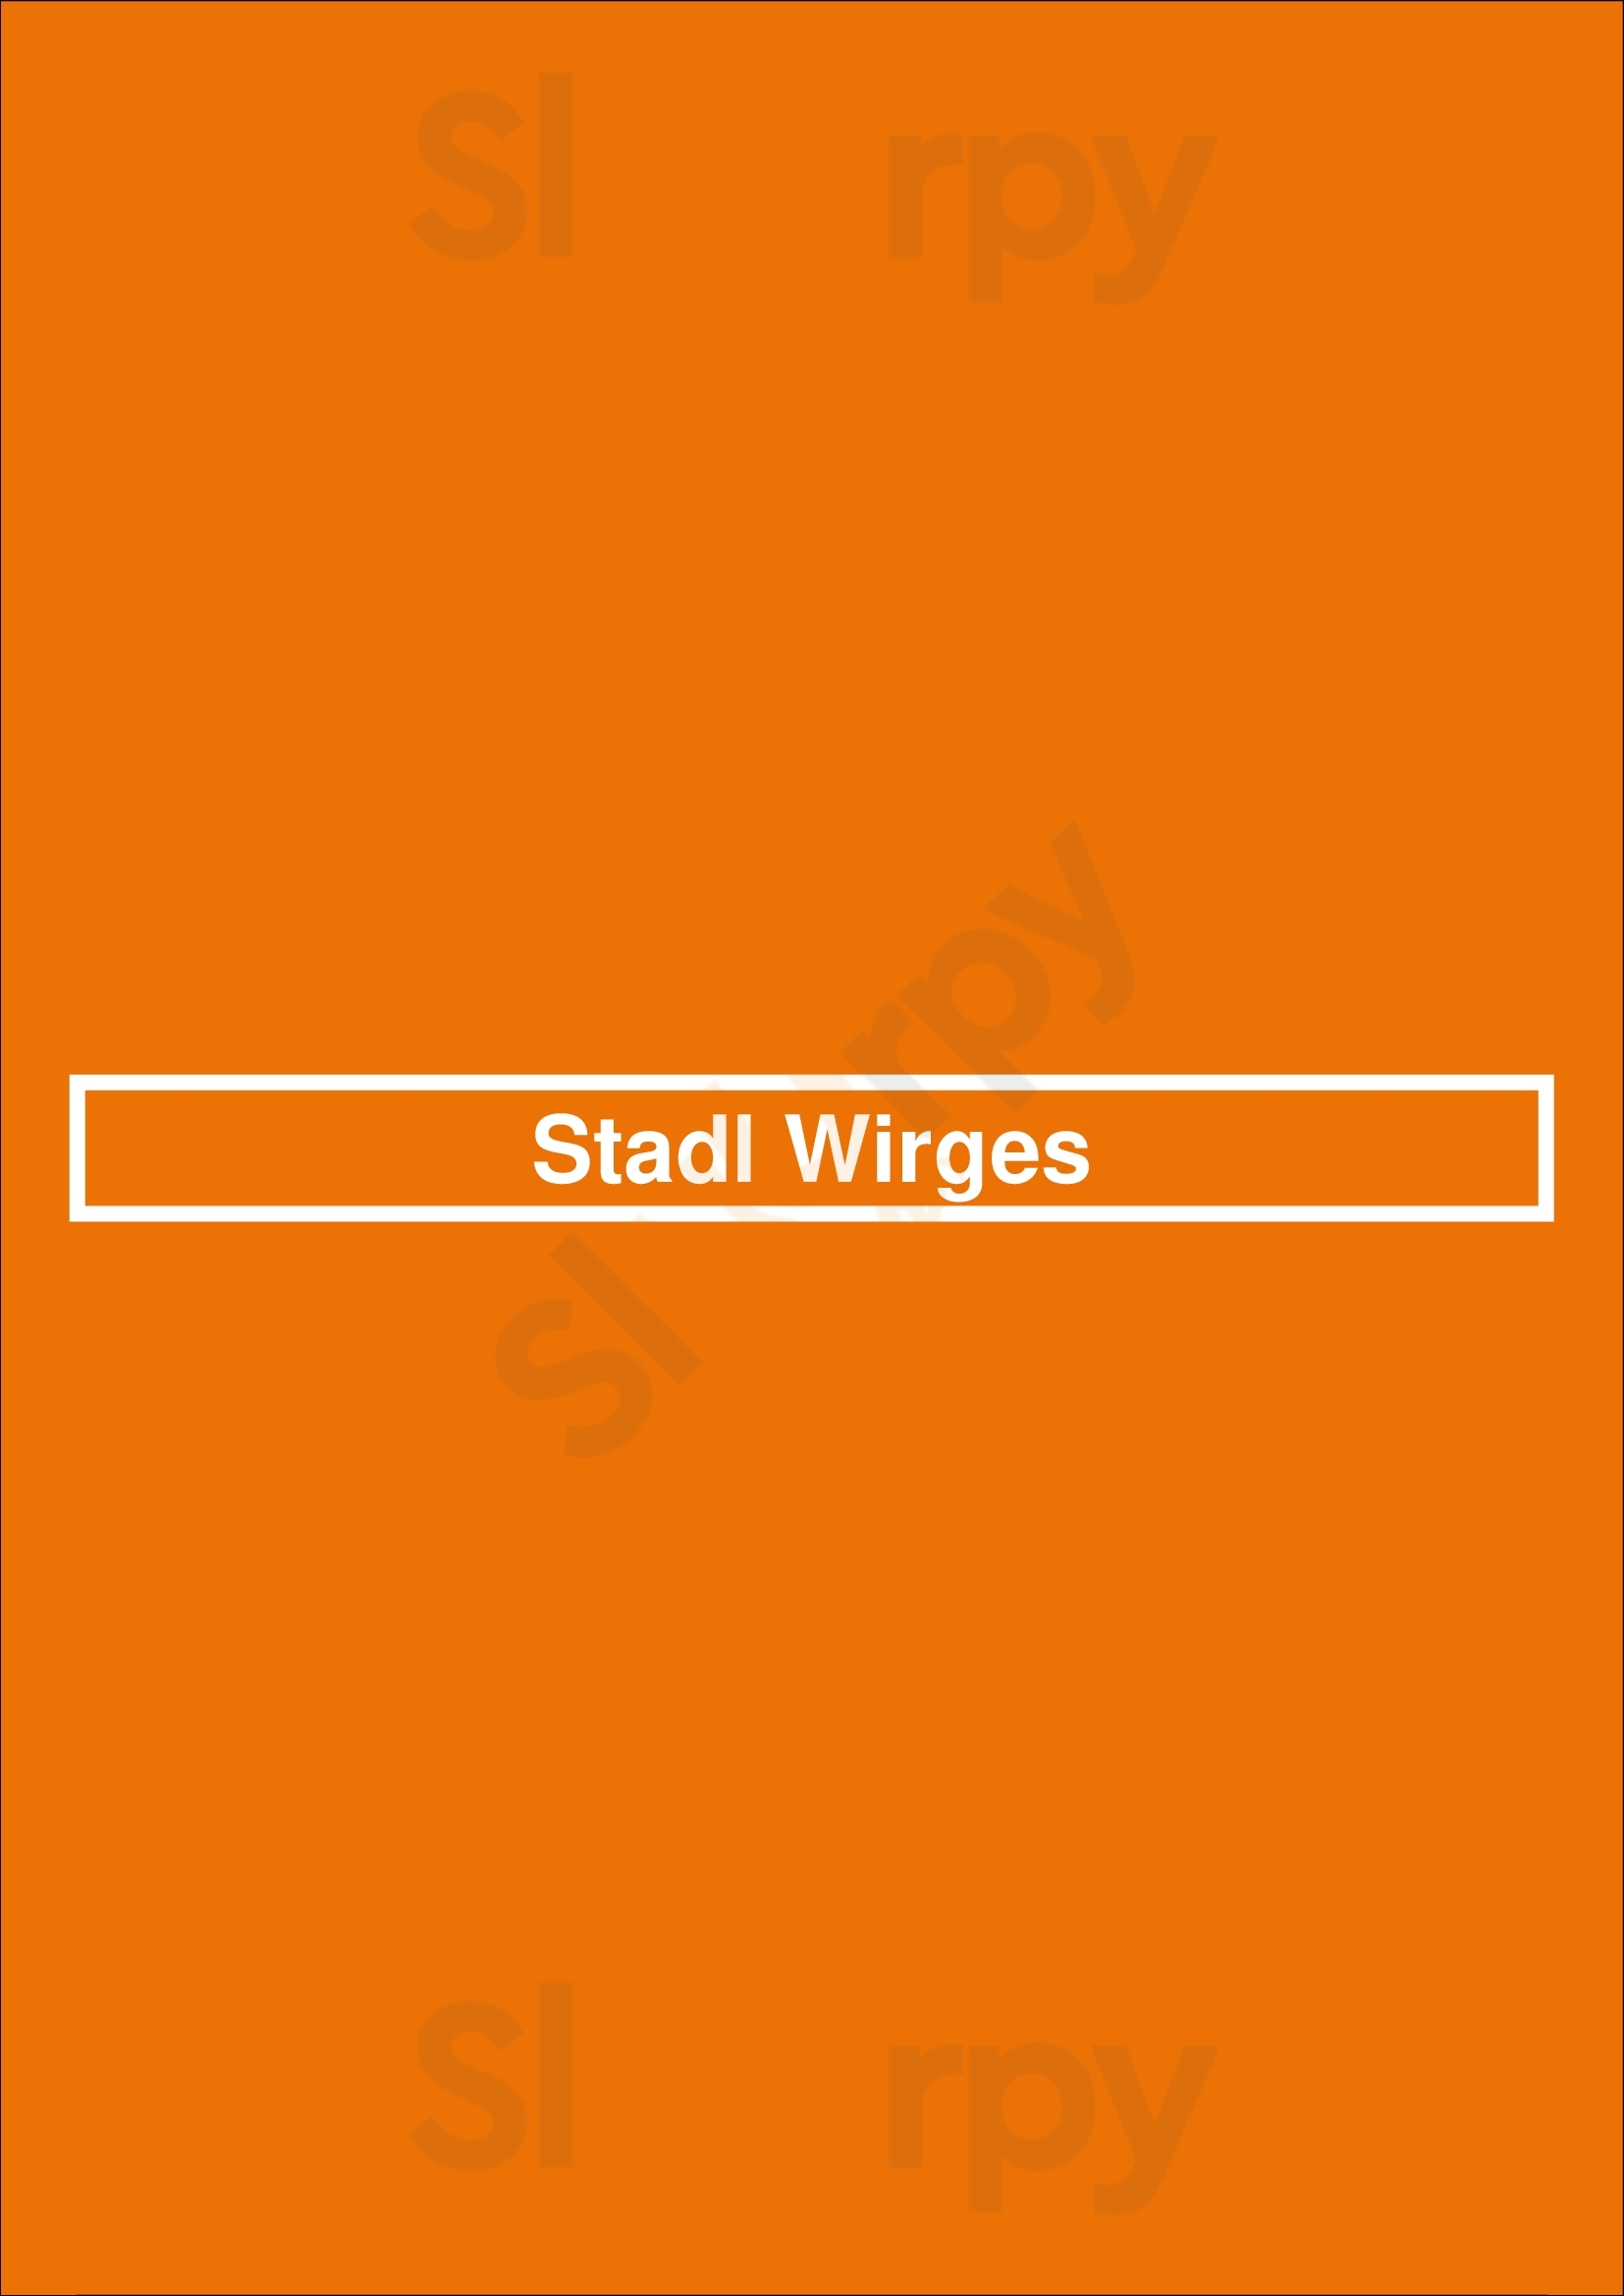 Stadl Wirges Wirges Menu - 1